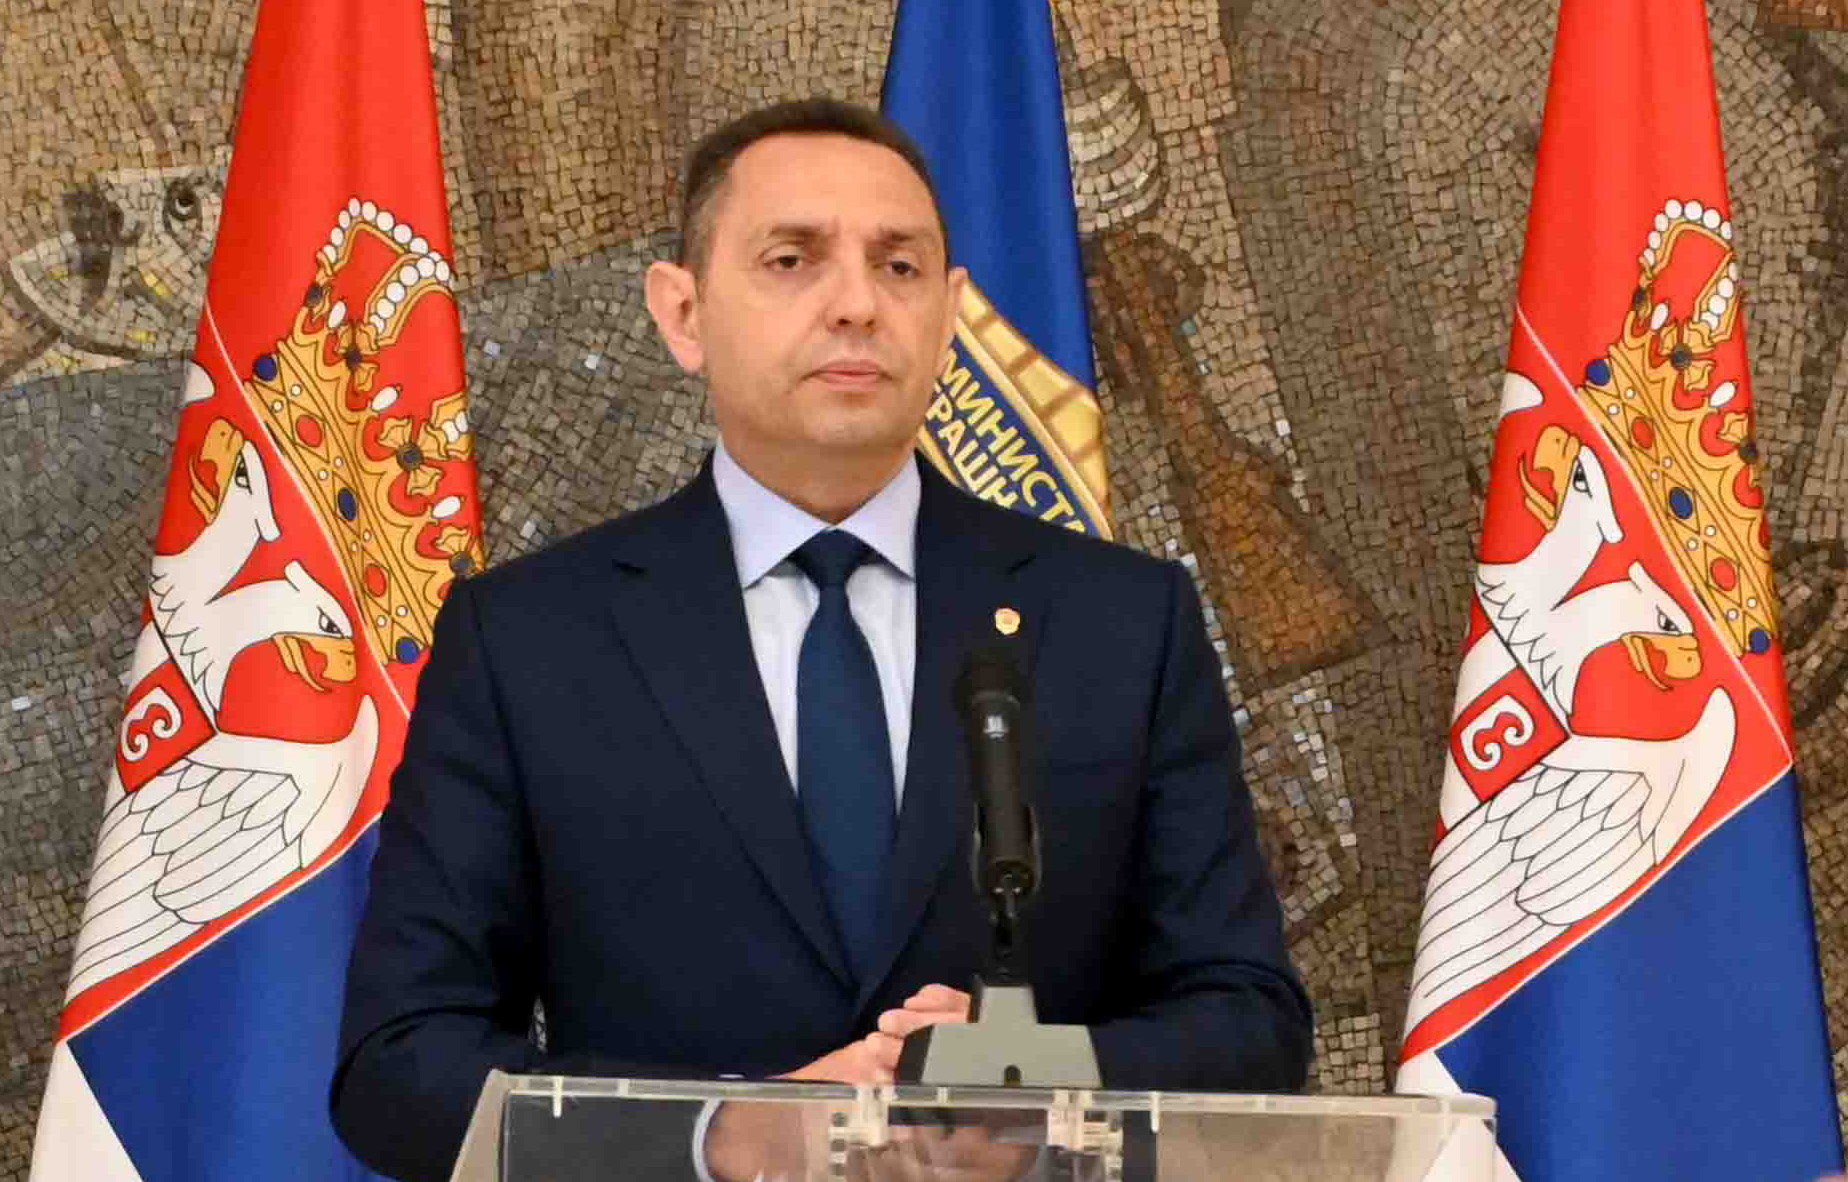 Министар Александар Вулин упутио телеграм саучешћа црногорском министру полиције Филипу Аџићу поводом масакра на Цетињу